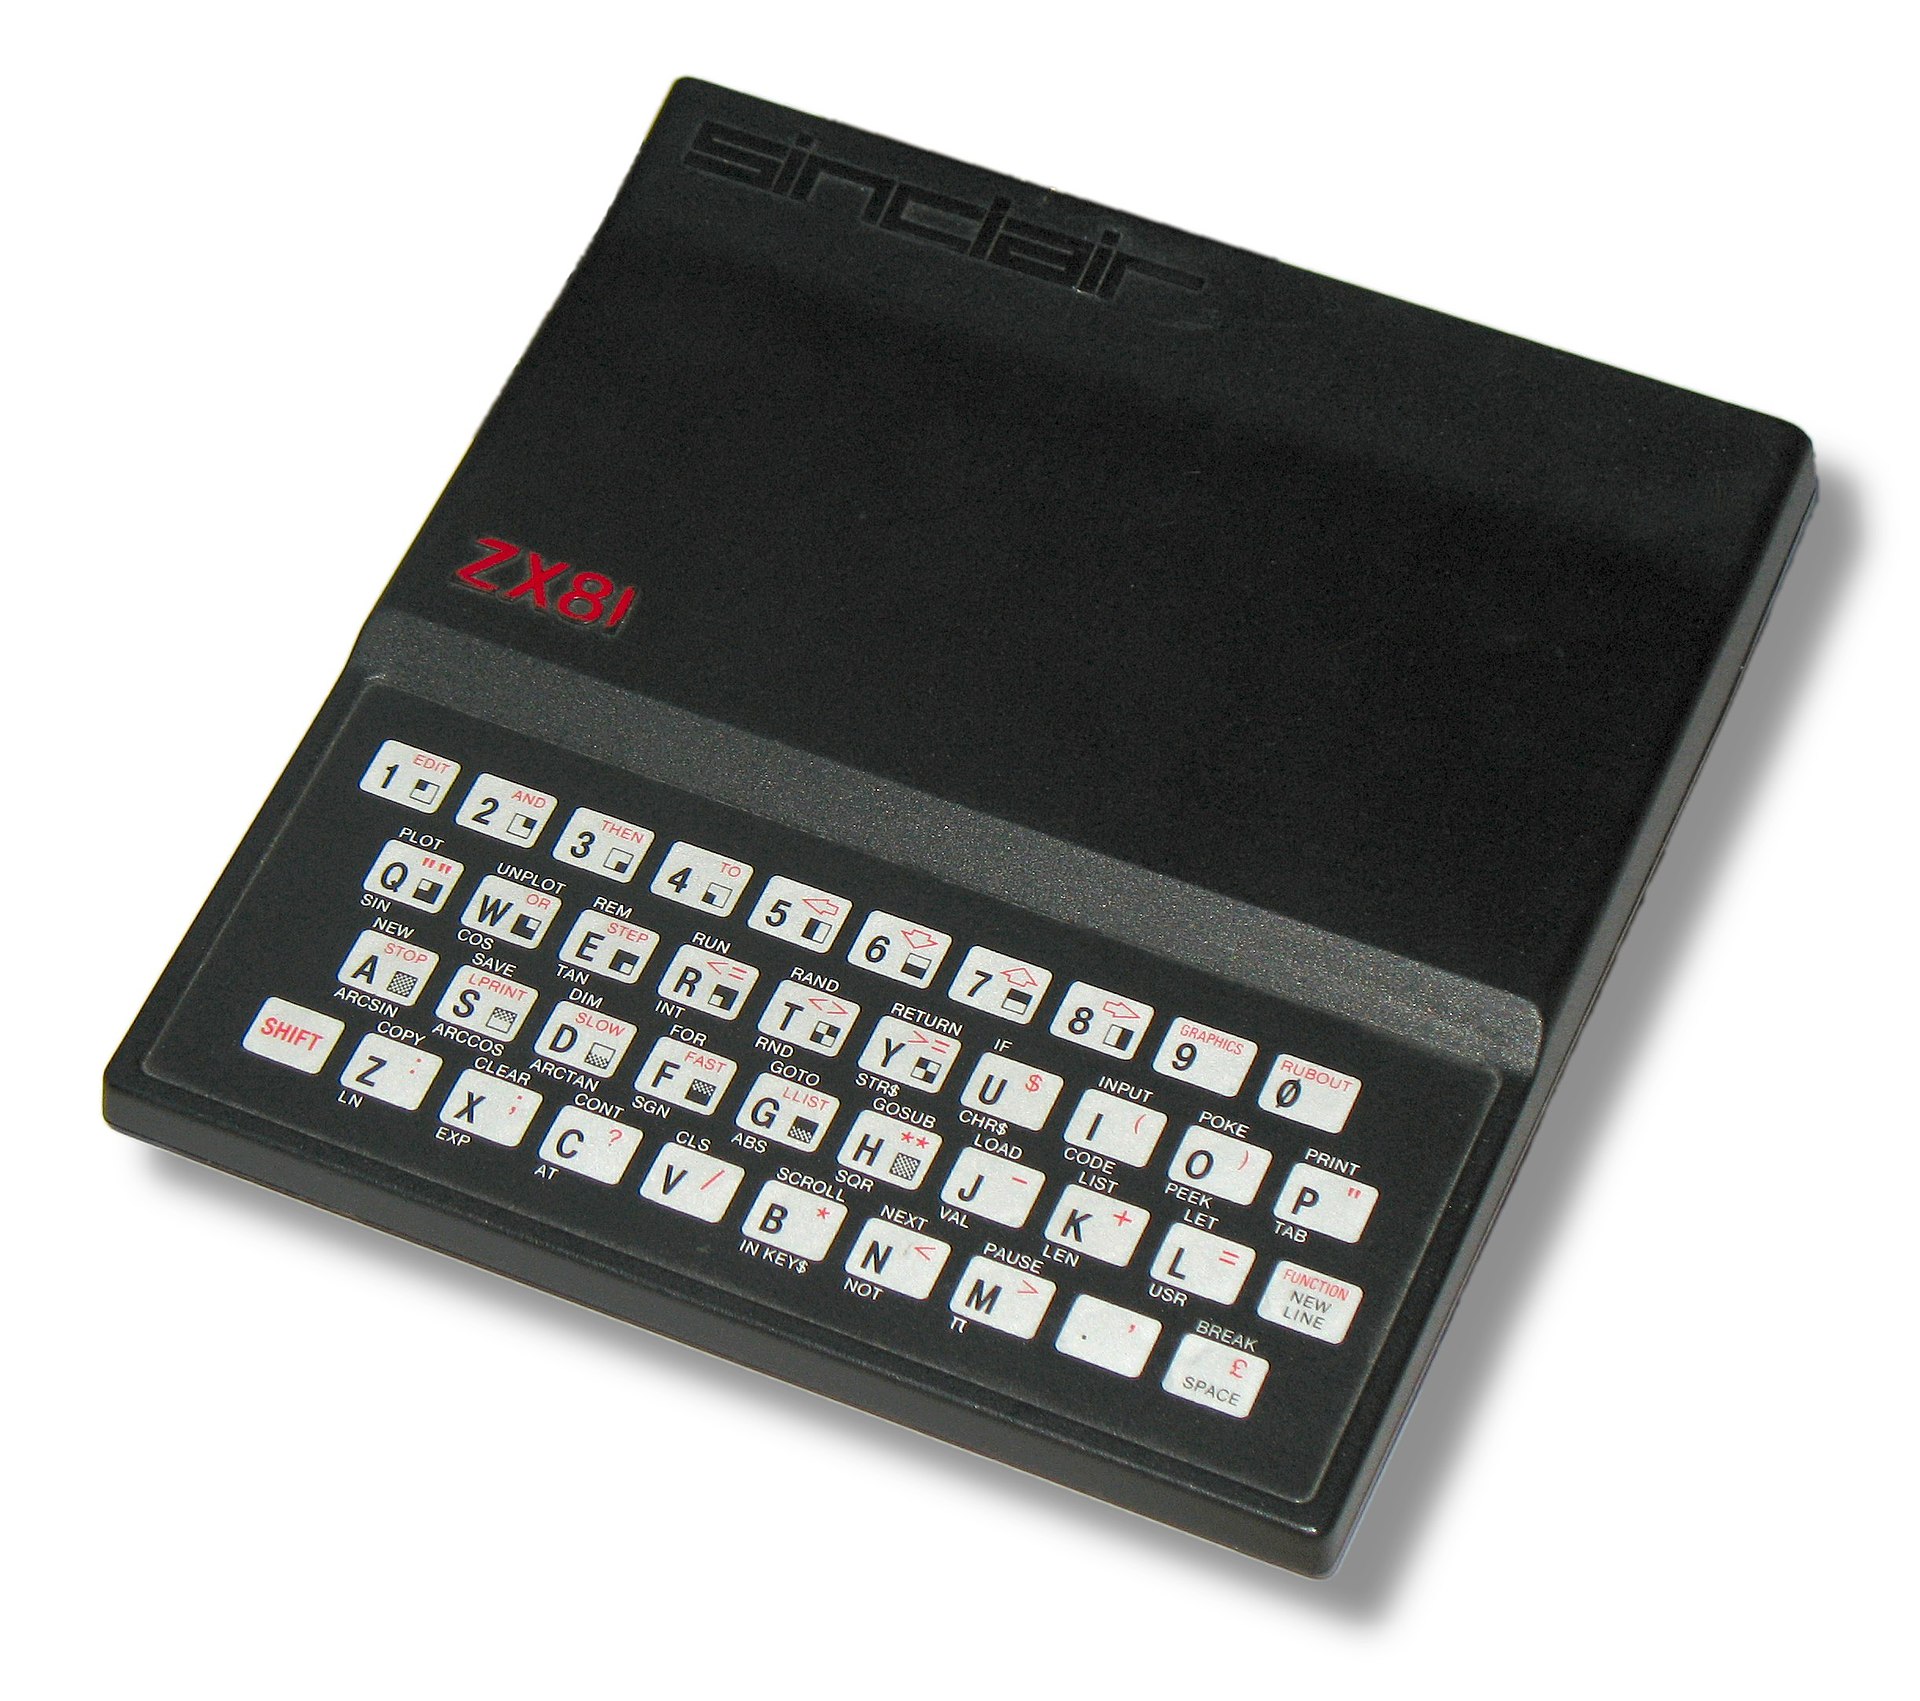 1920px-Sinclair_ZX81.jpg